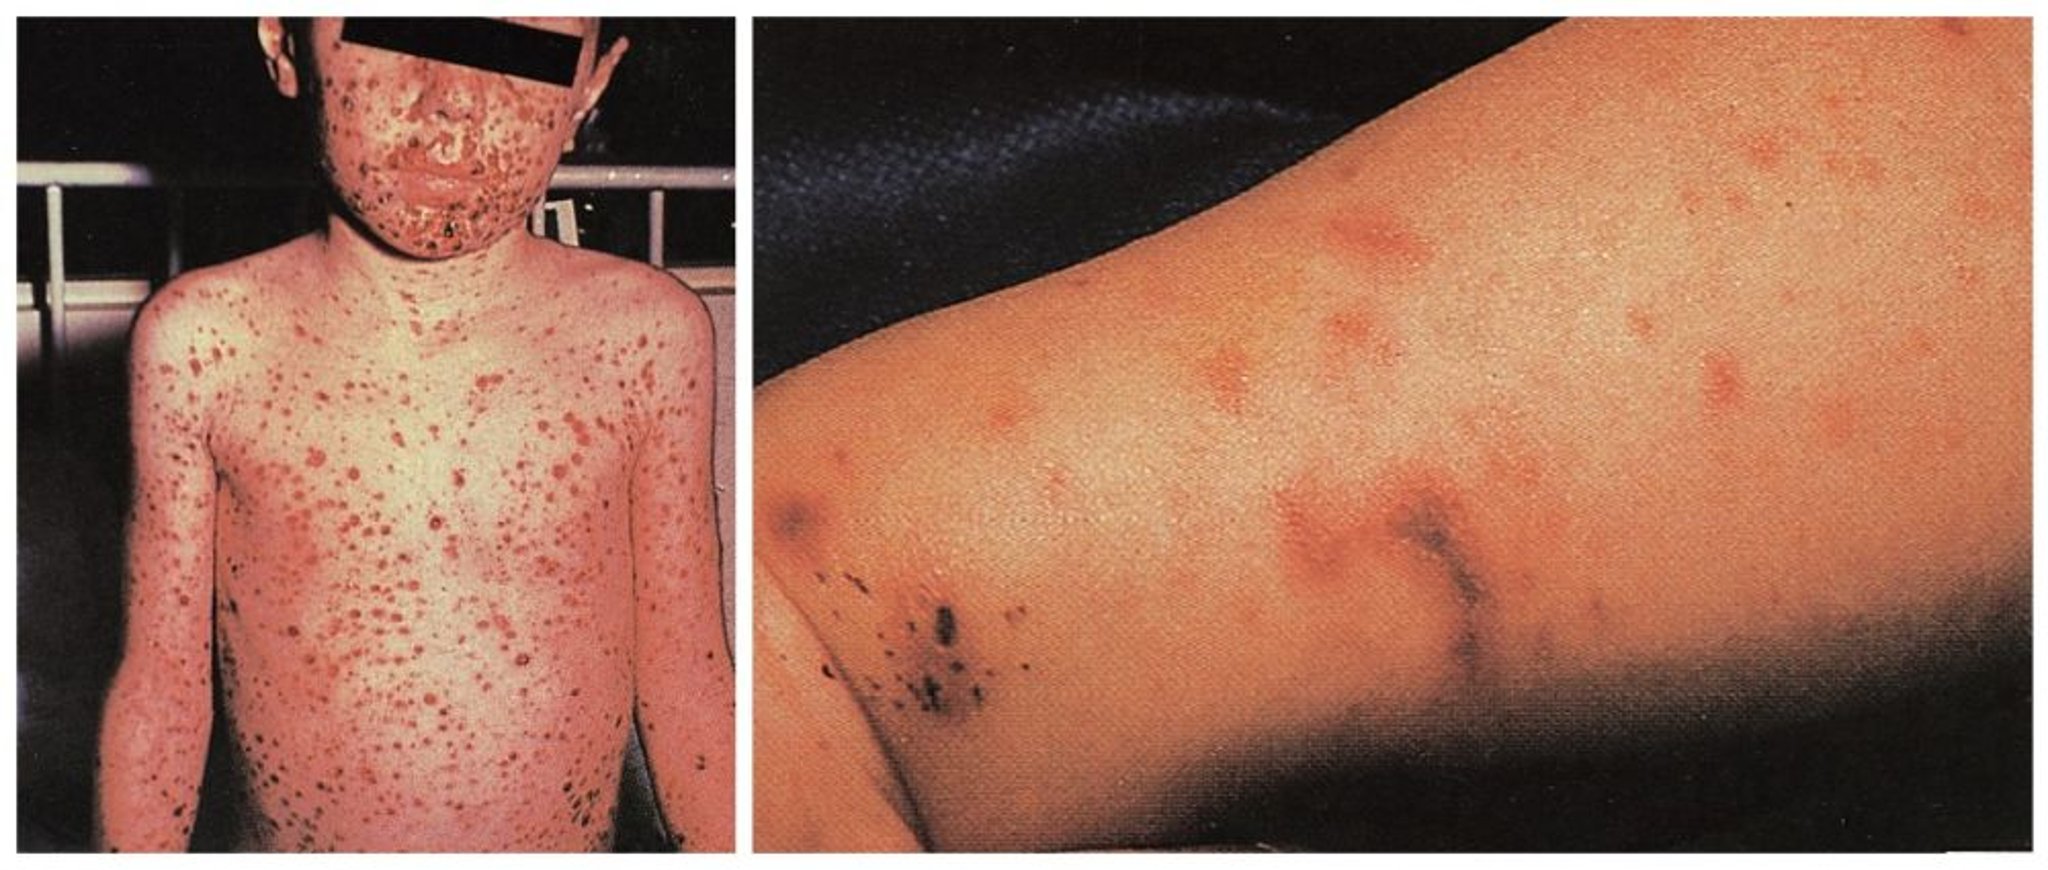 Ausgedehnter Hautausschlag infolge einer Infektion im Blutkreislauf durch Meningokokken